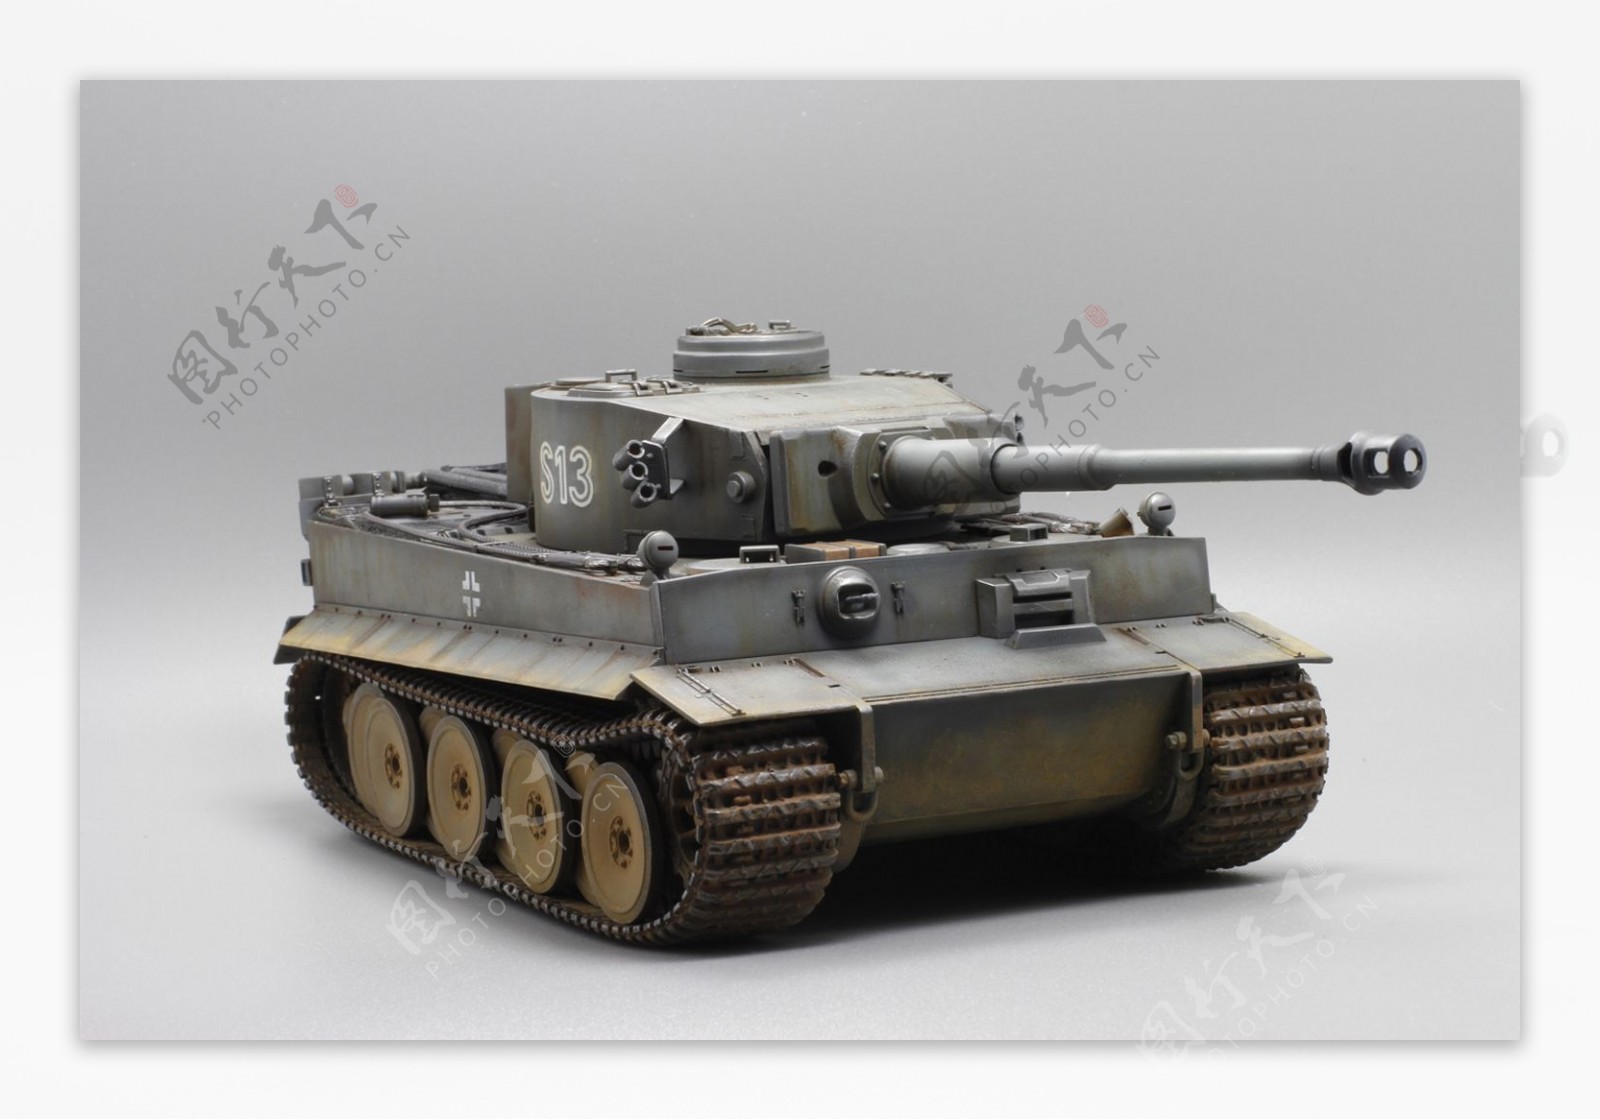 虎式坦克模型图片